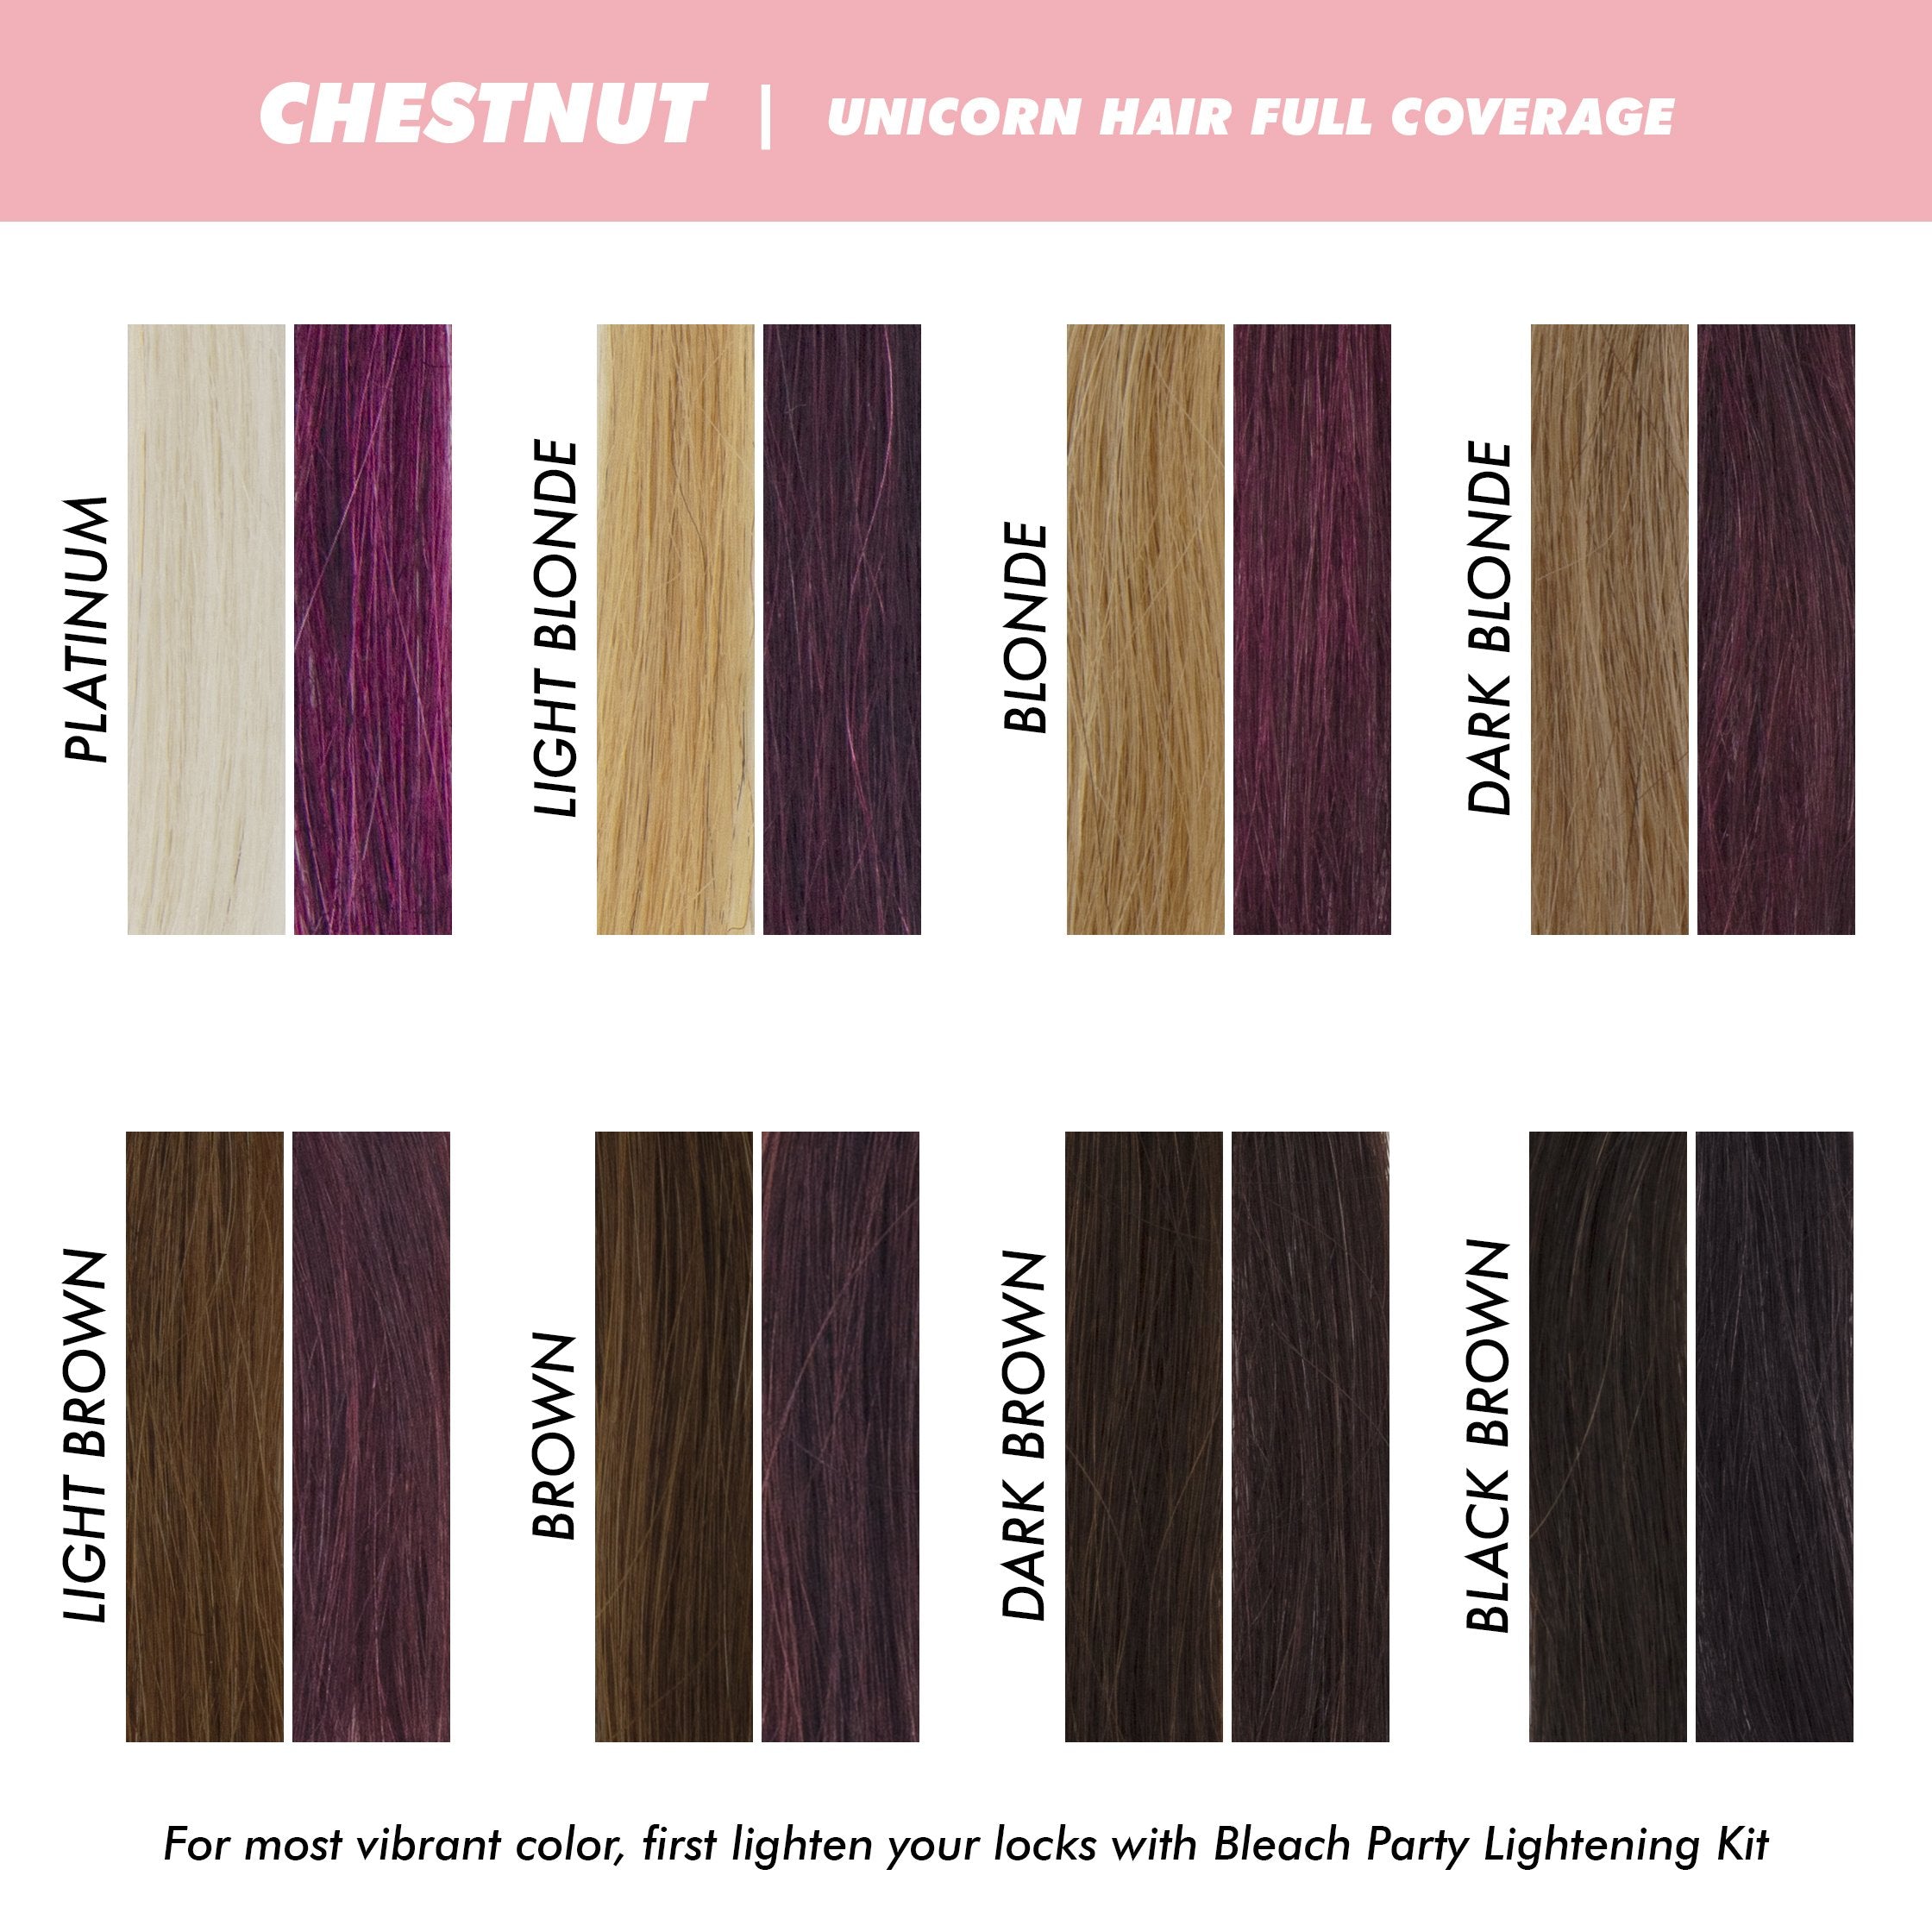 Unicorn Hair Full Coverage variant:Chestnut